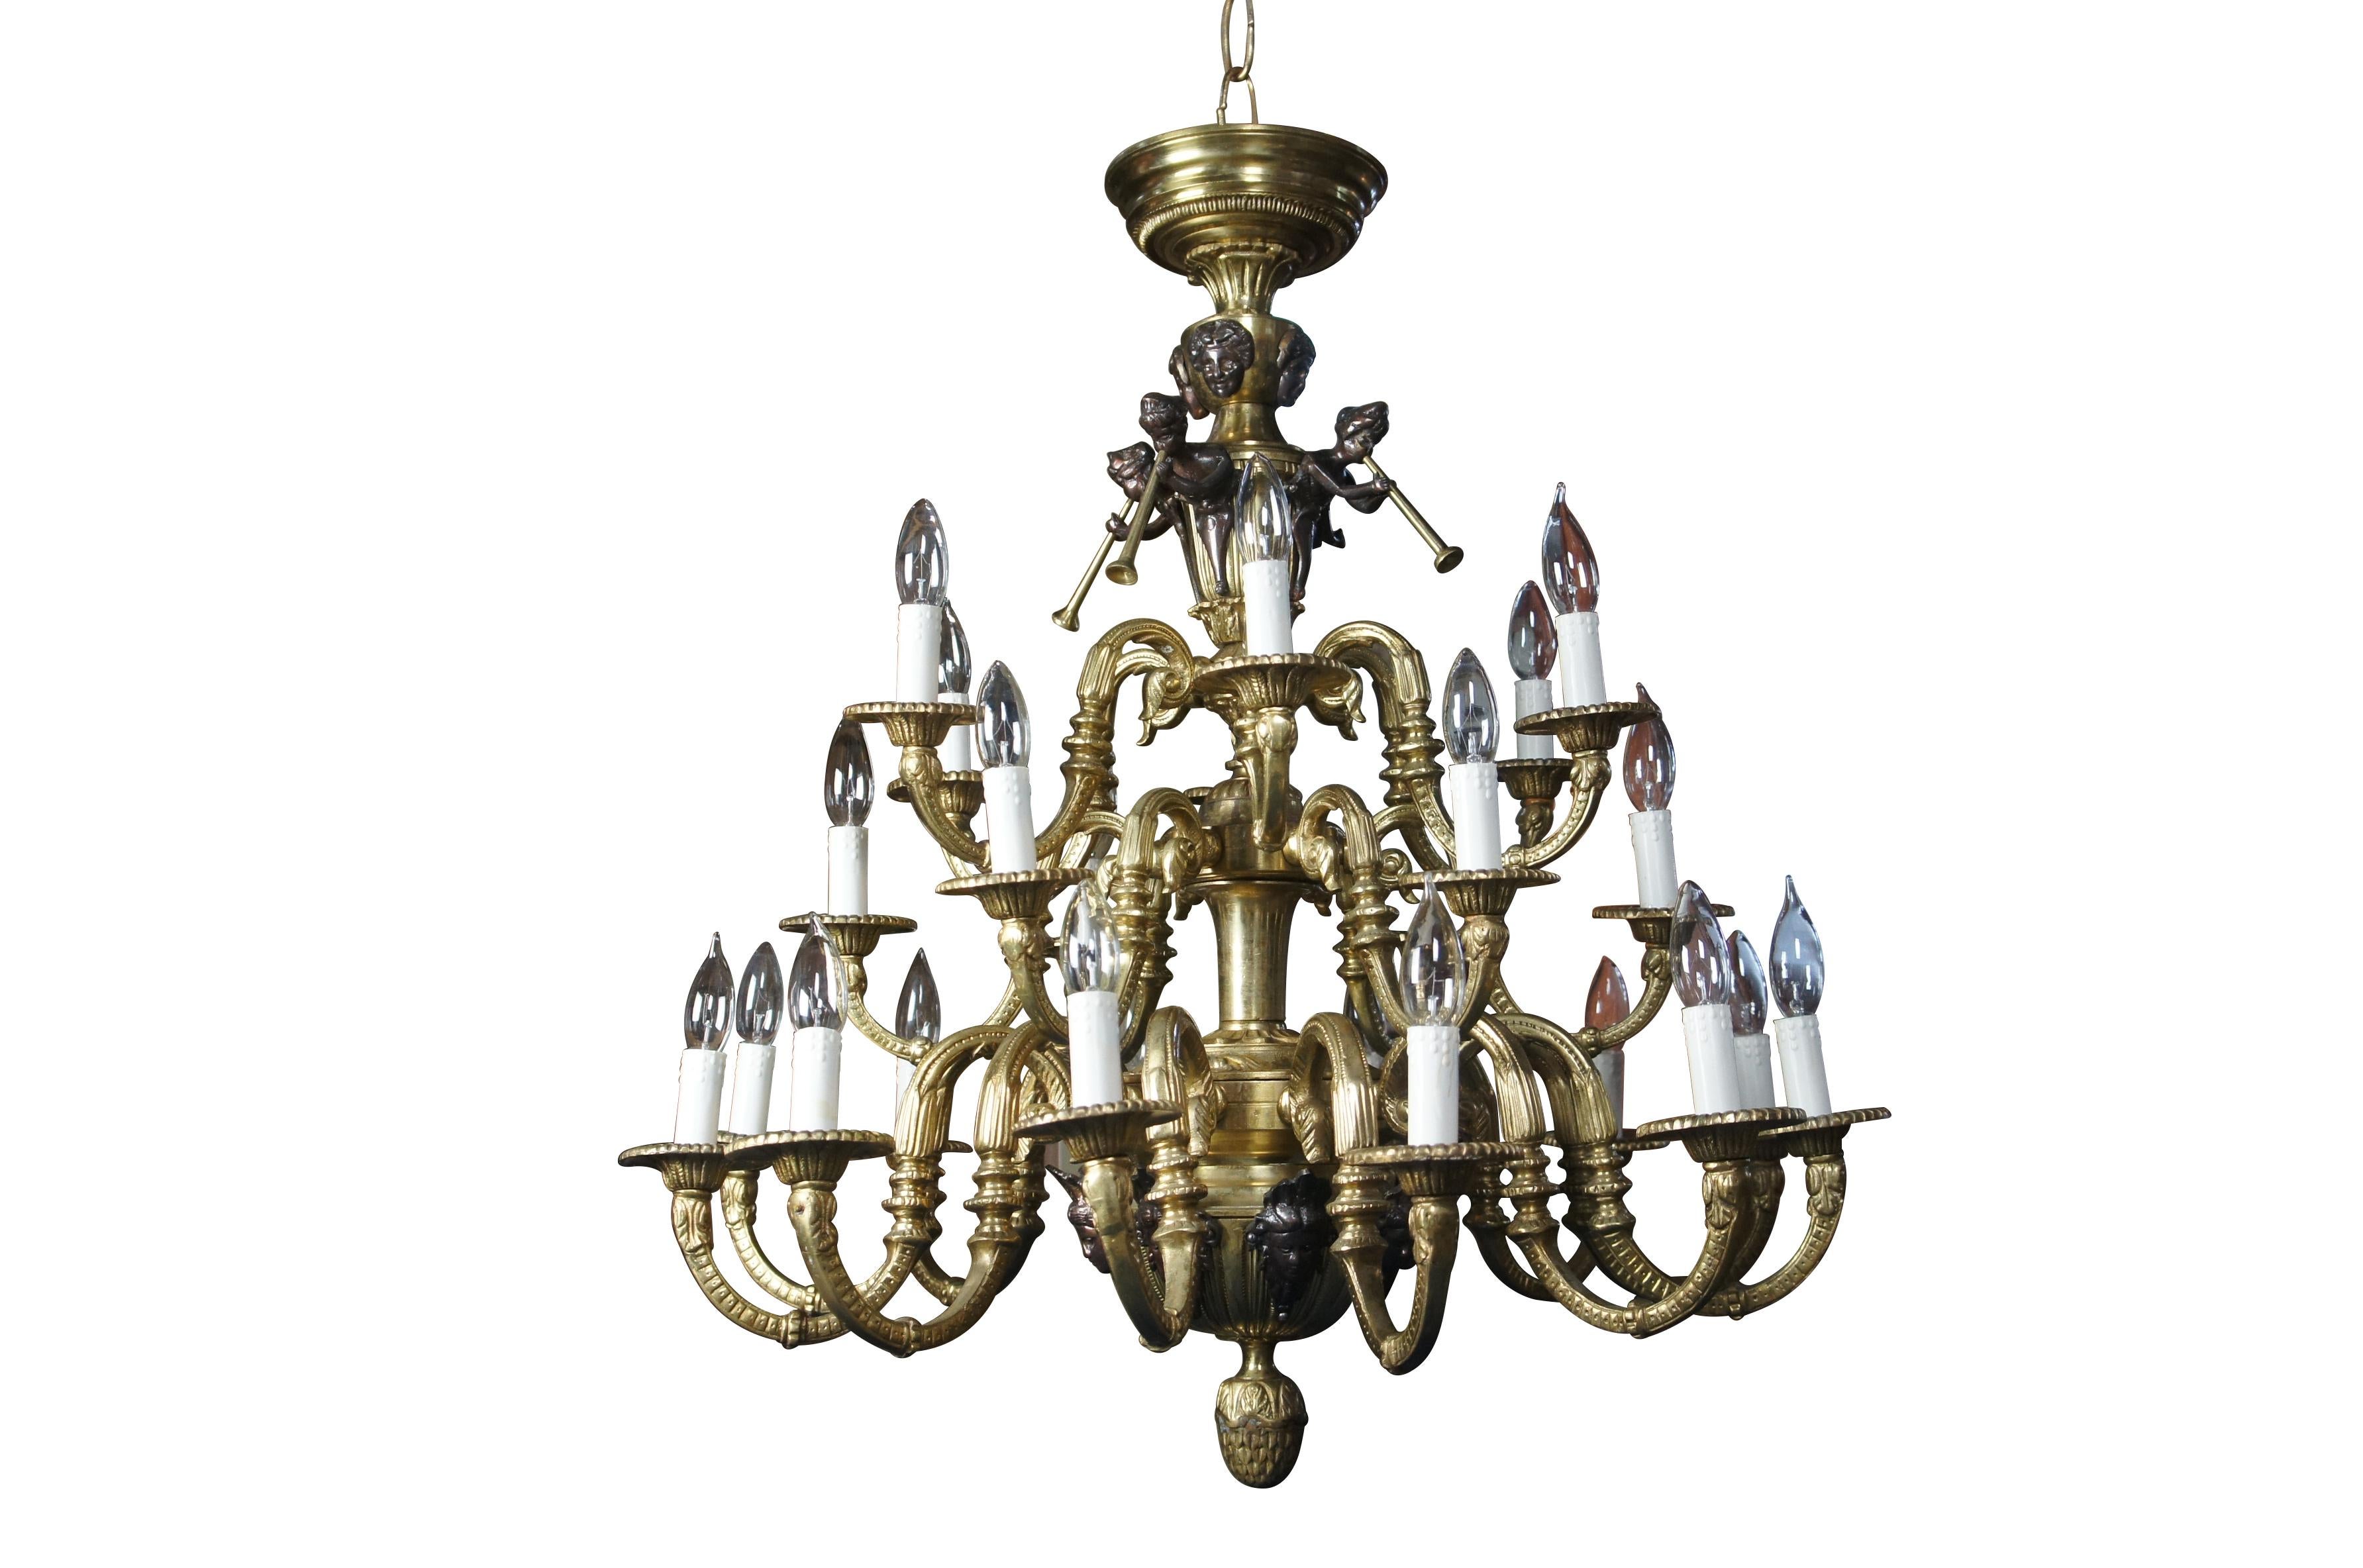 Impressionnant lustre de style Louis XV / Empire français / Pierre Gouthière en bronze doré à vingt-quatre lumières, trois niveaux de chérubins / anges / trompettes.  Réalisé en bronze doré, il représente des chérubins, des putti et des anges jouant